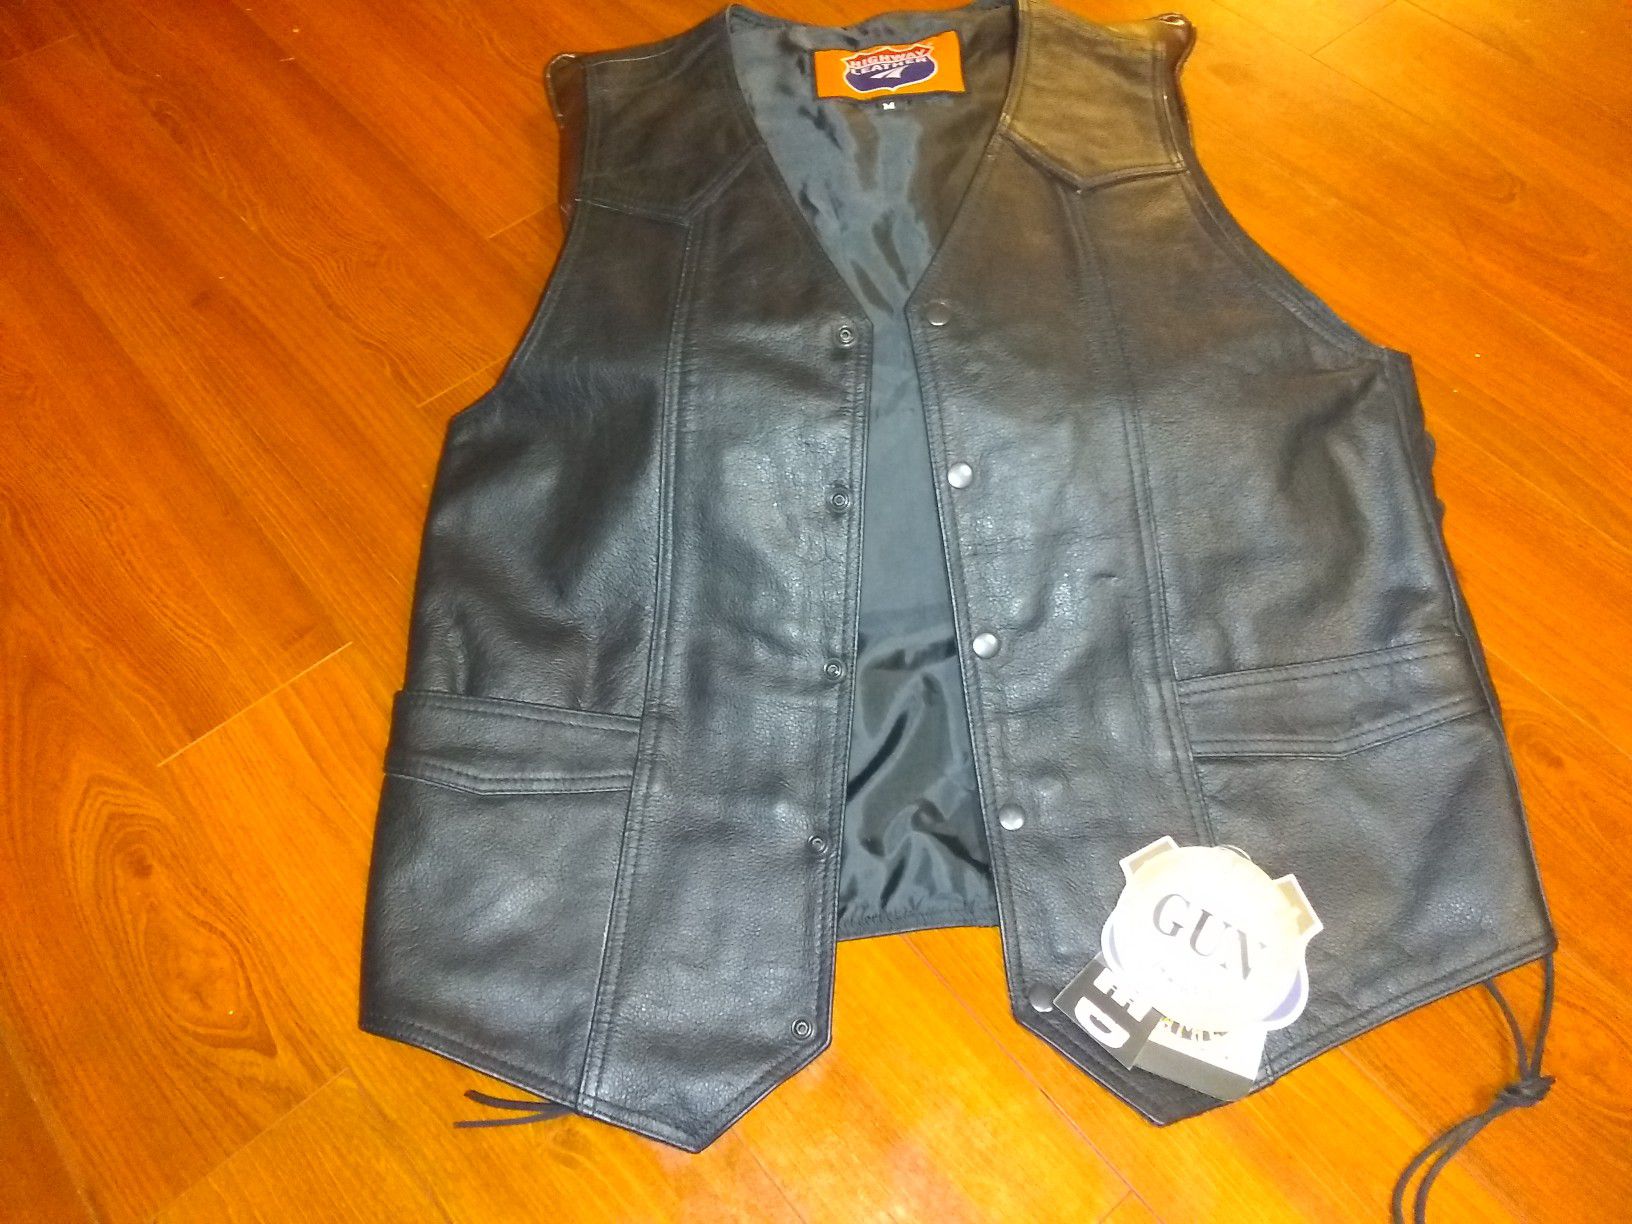 Leather biker vest